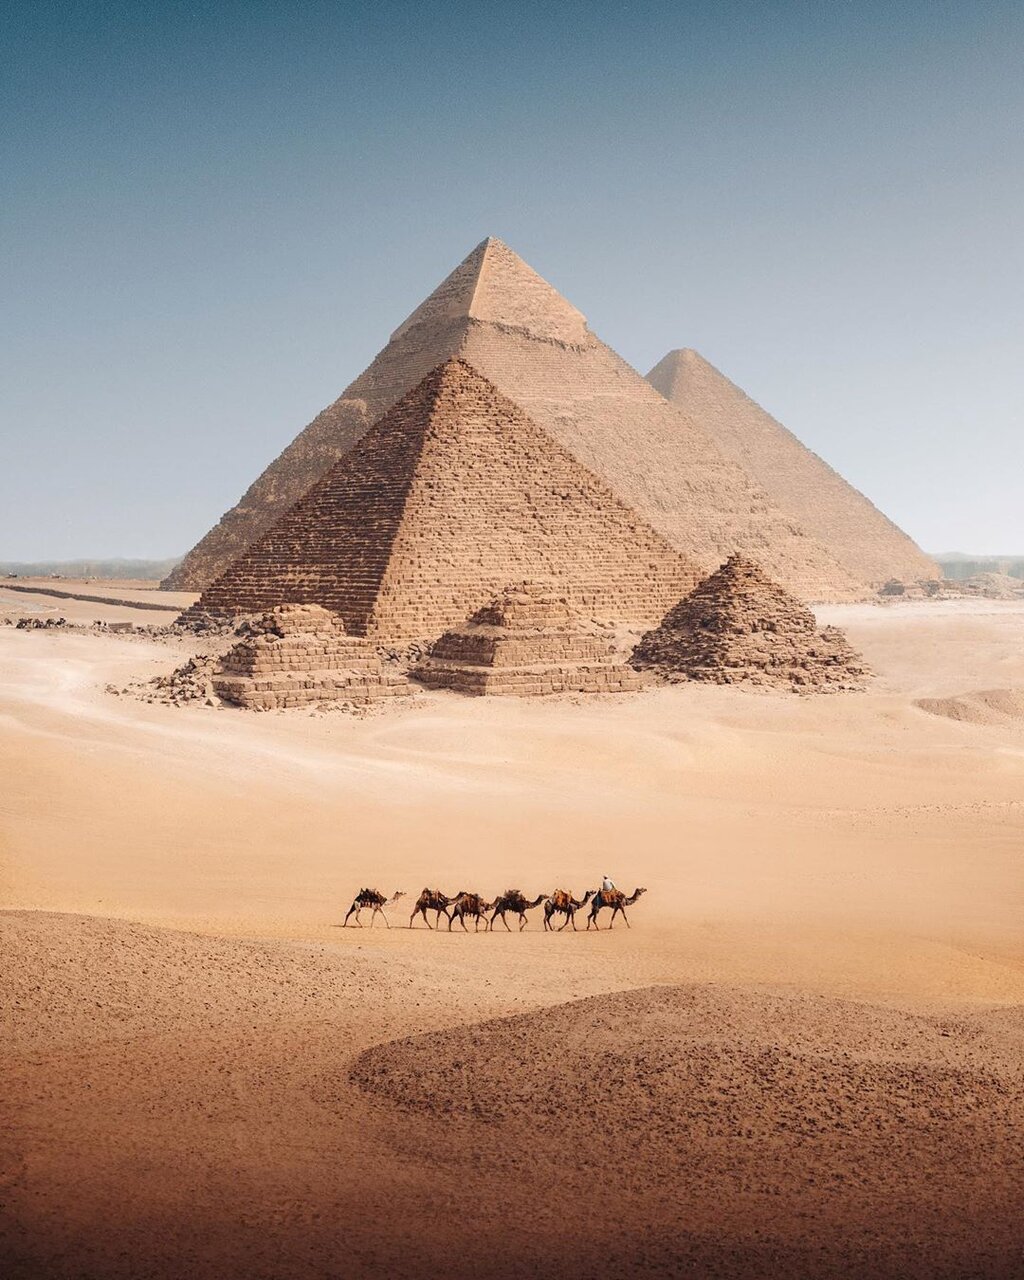 راز ساخت اهرام بزرگ مصر بالاخره فاش شد